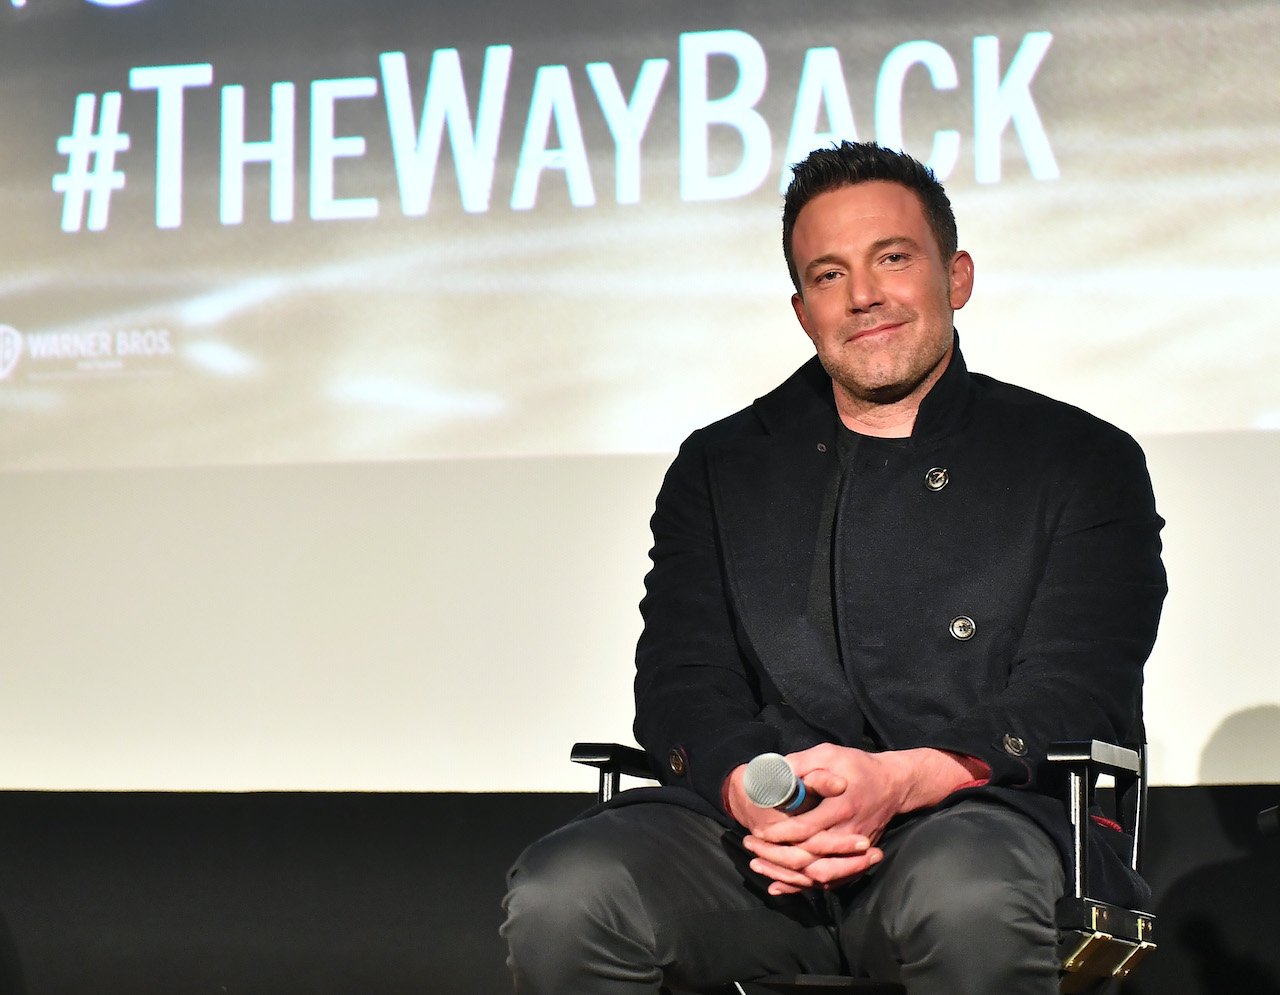 Ben Affleck attends "The Way Back"  Atlanta Q&A screening at Plaza Theatre 